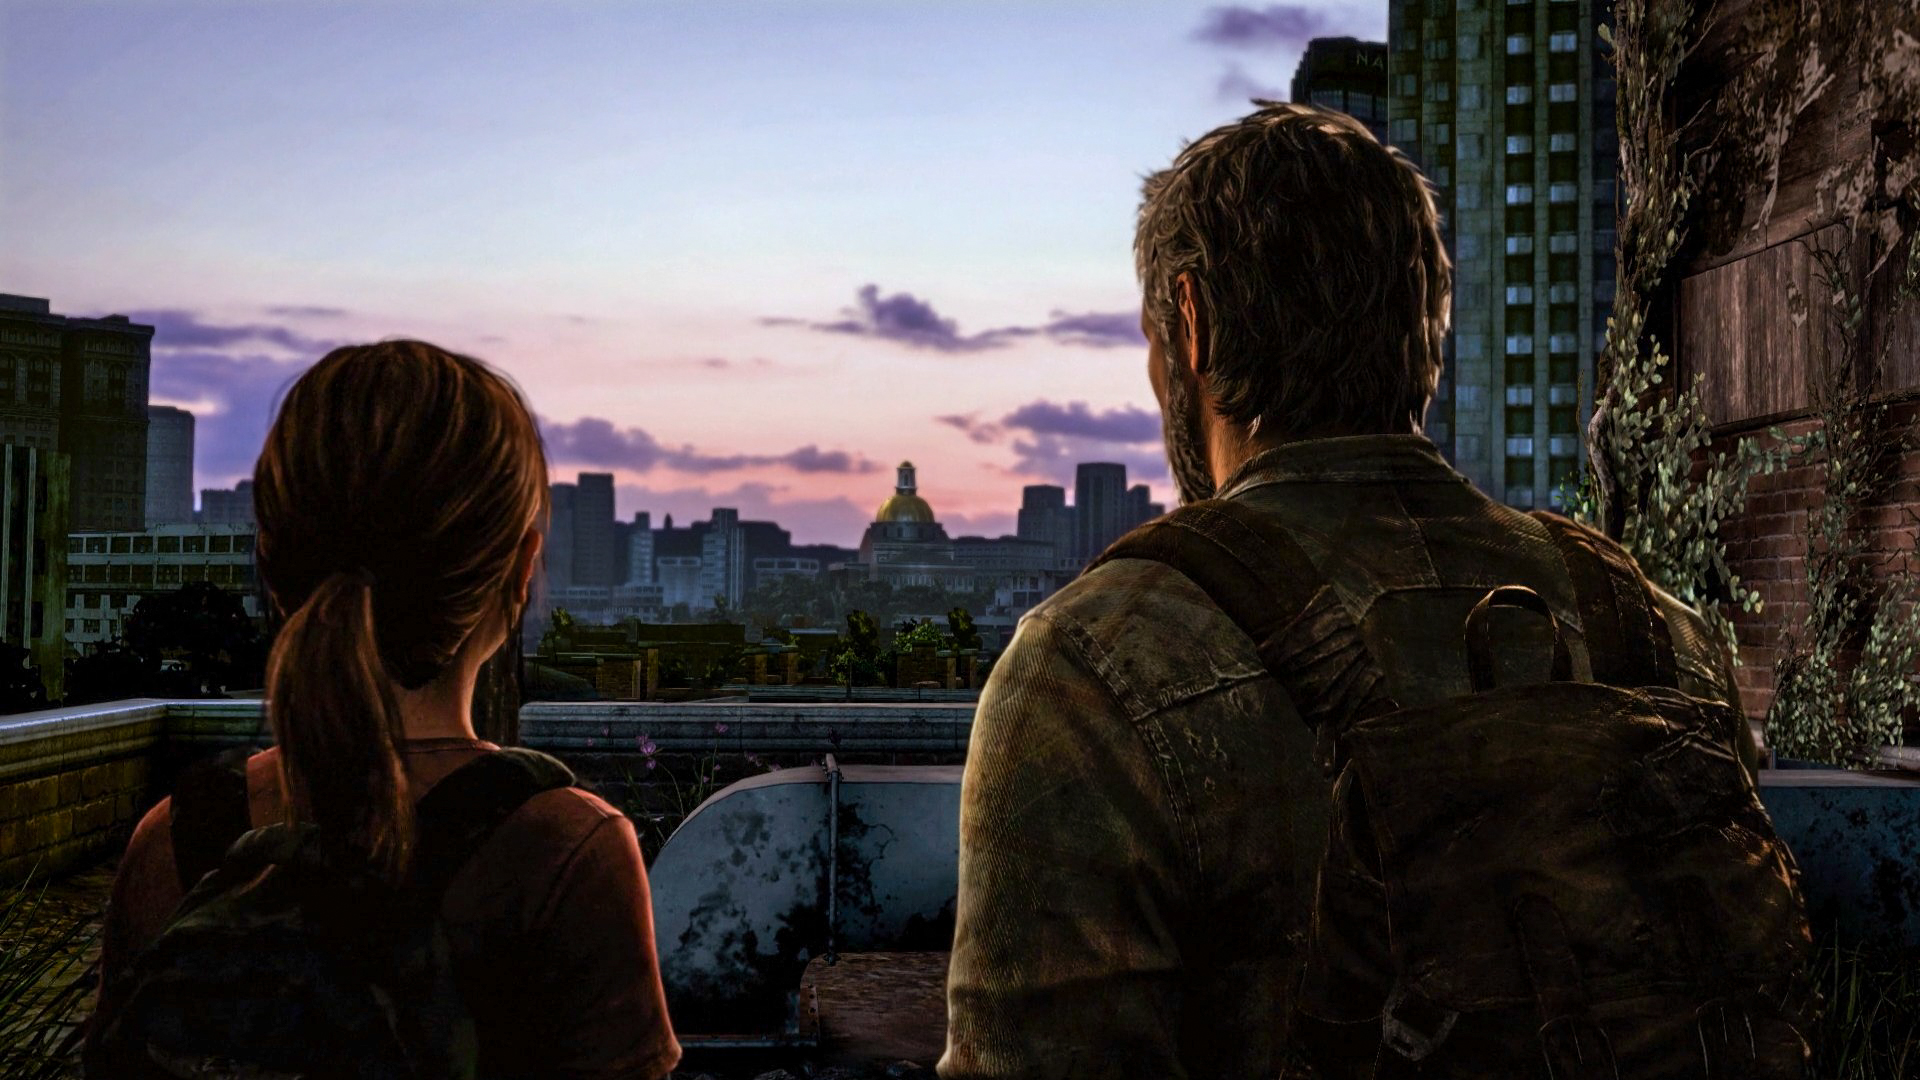 Descargar fondos de escritorio de The Last Of Us HD